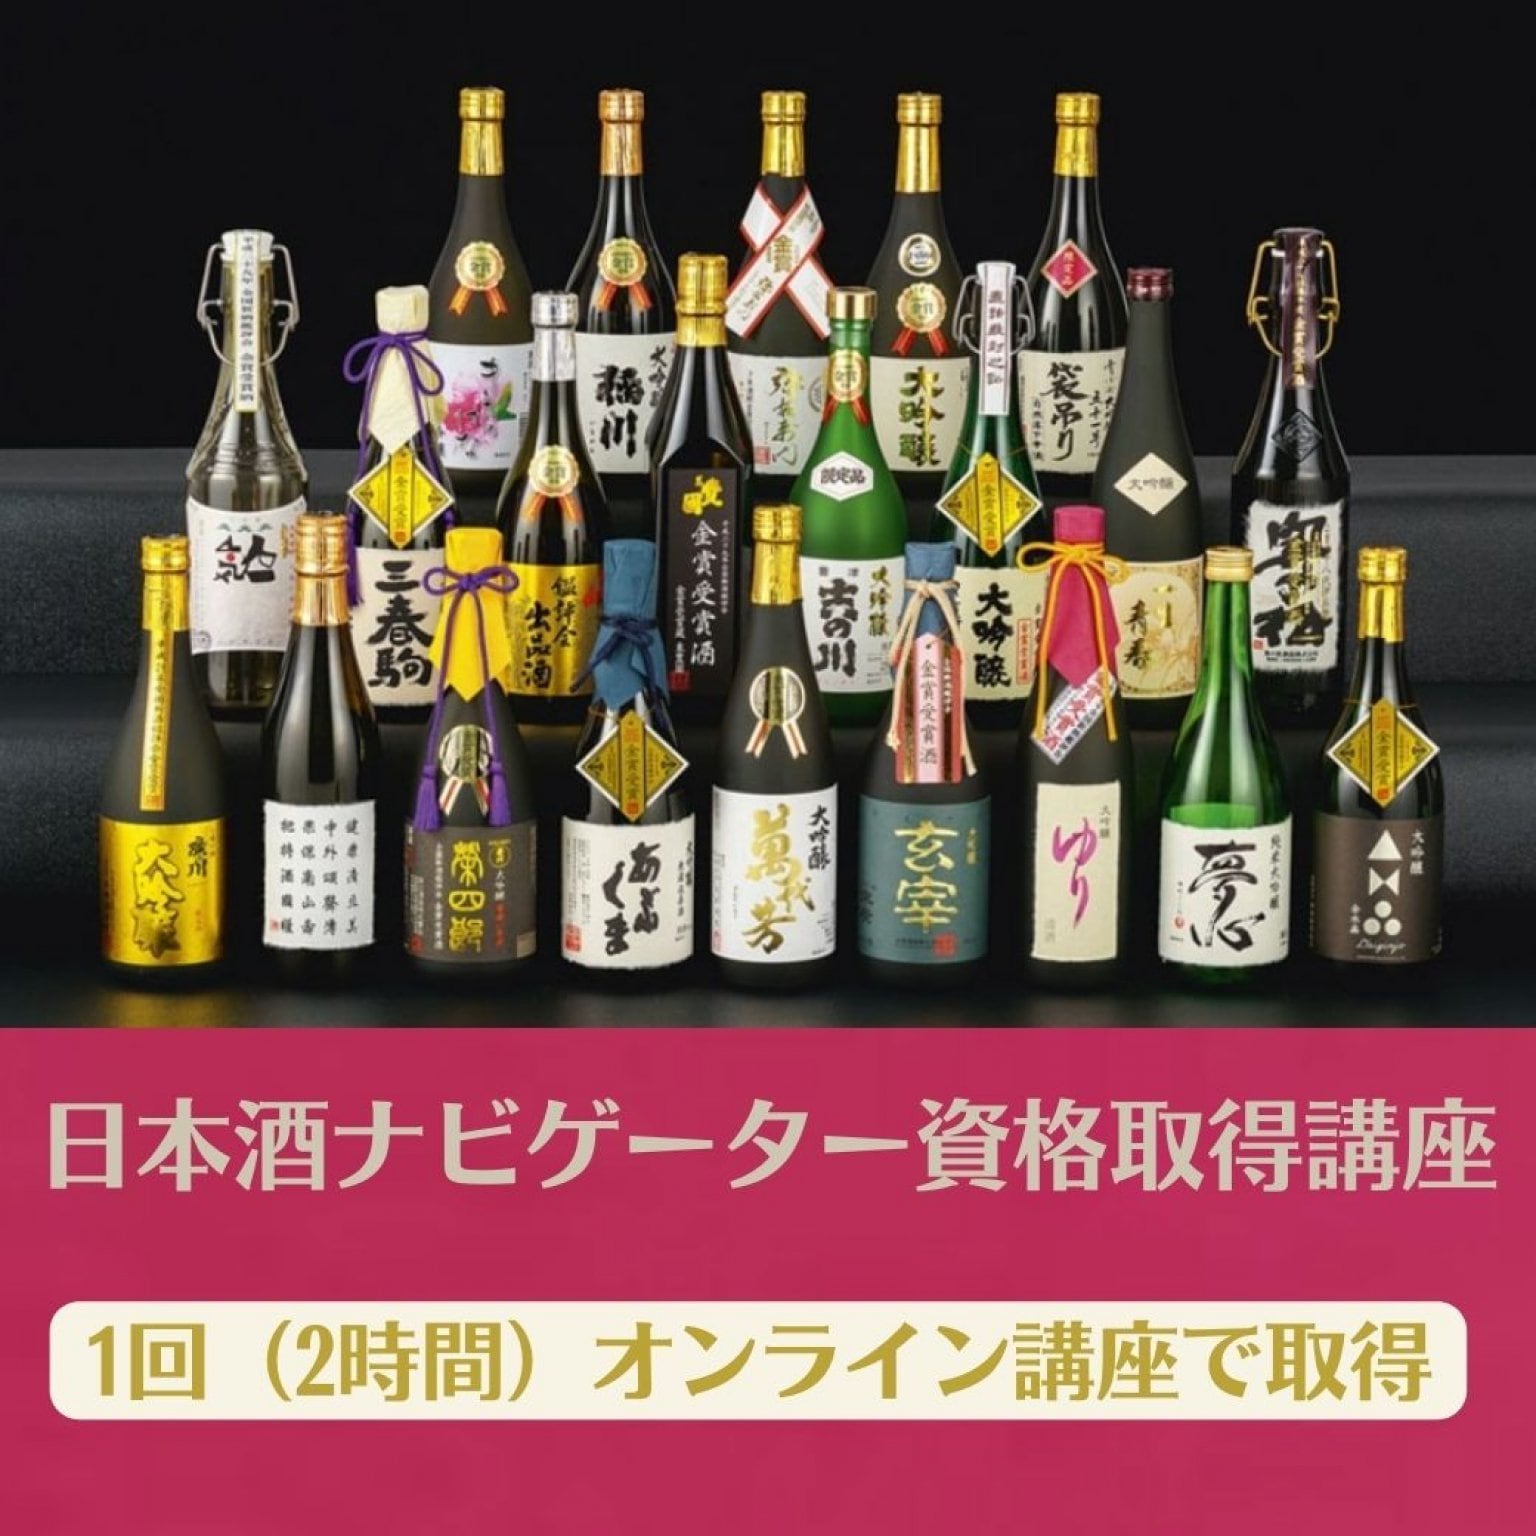 【期間限定高額ポイント付】２時間でとれる日本酒ナビゲーター認定講座